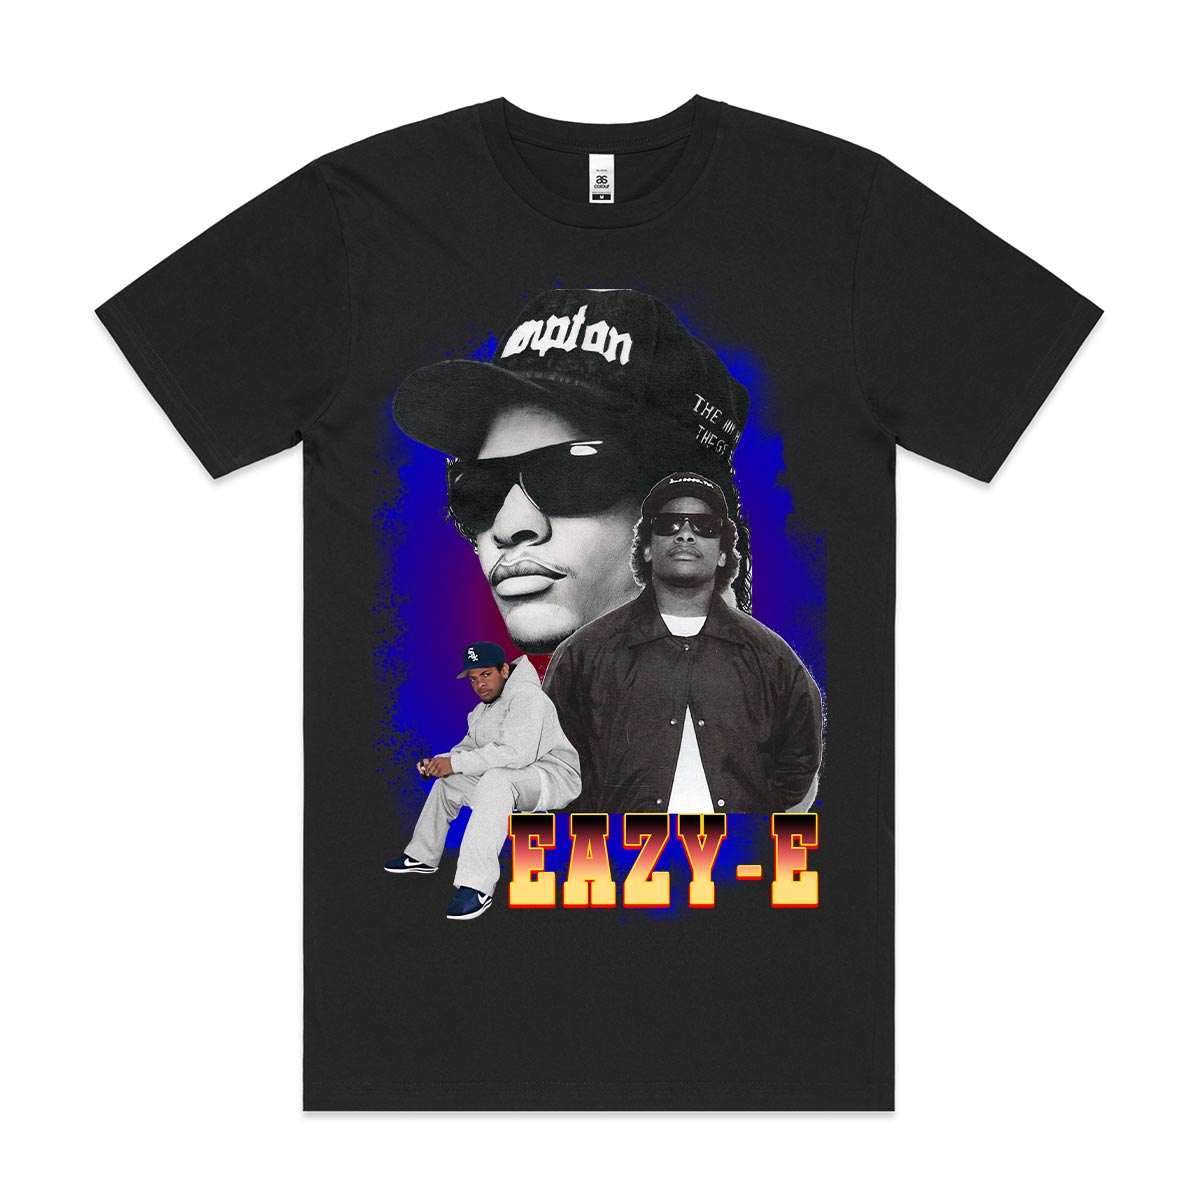 Eazy-E 03 T-Shirt Rapper Family Fan Music Hip Hop Culture